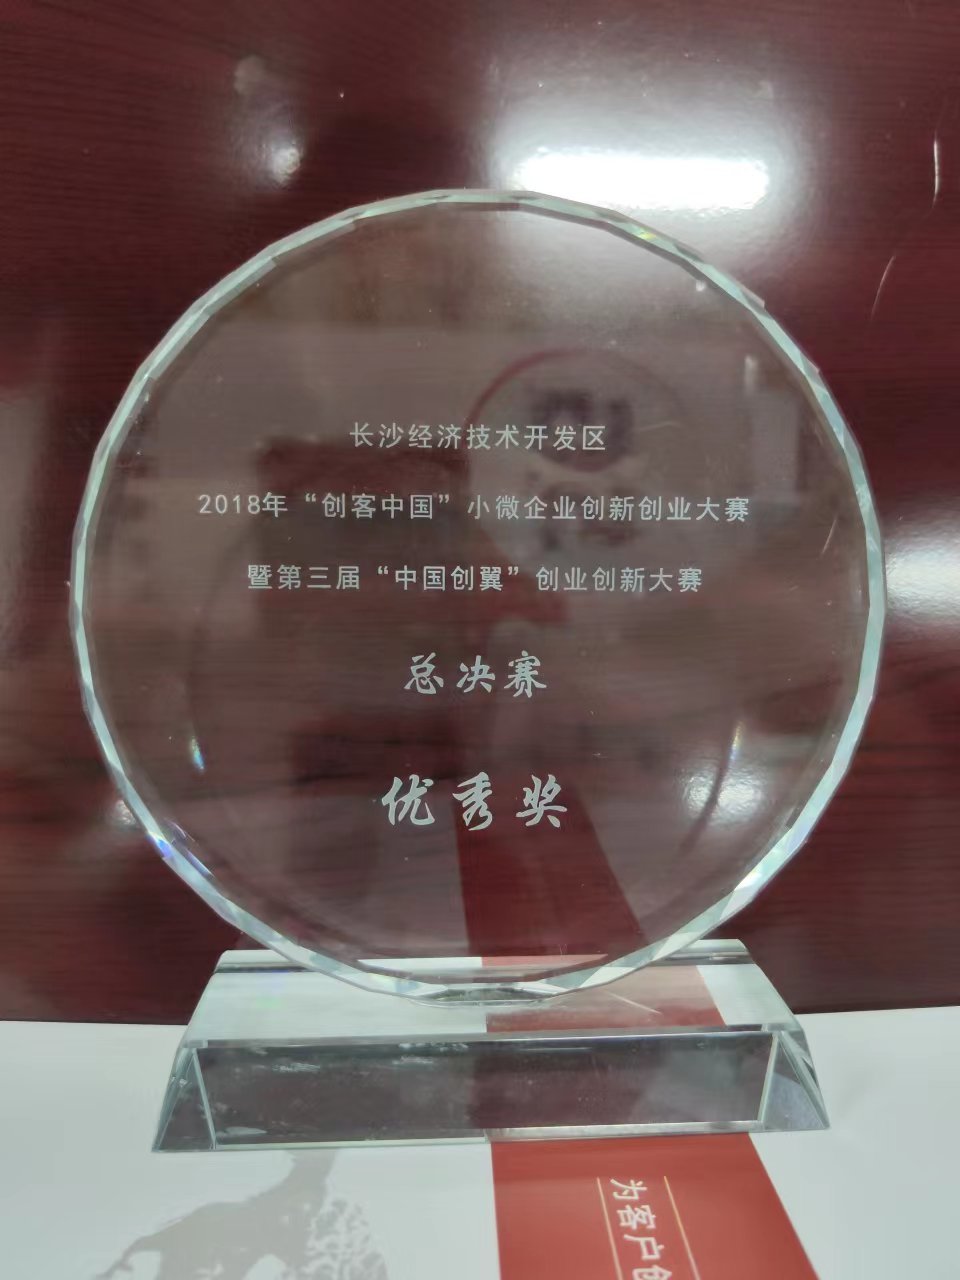 长沙经济技术开发区2018年“创客中国”小微企业创新创业大赛优胜奖